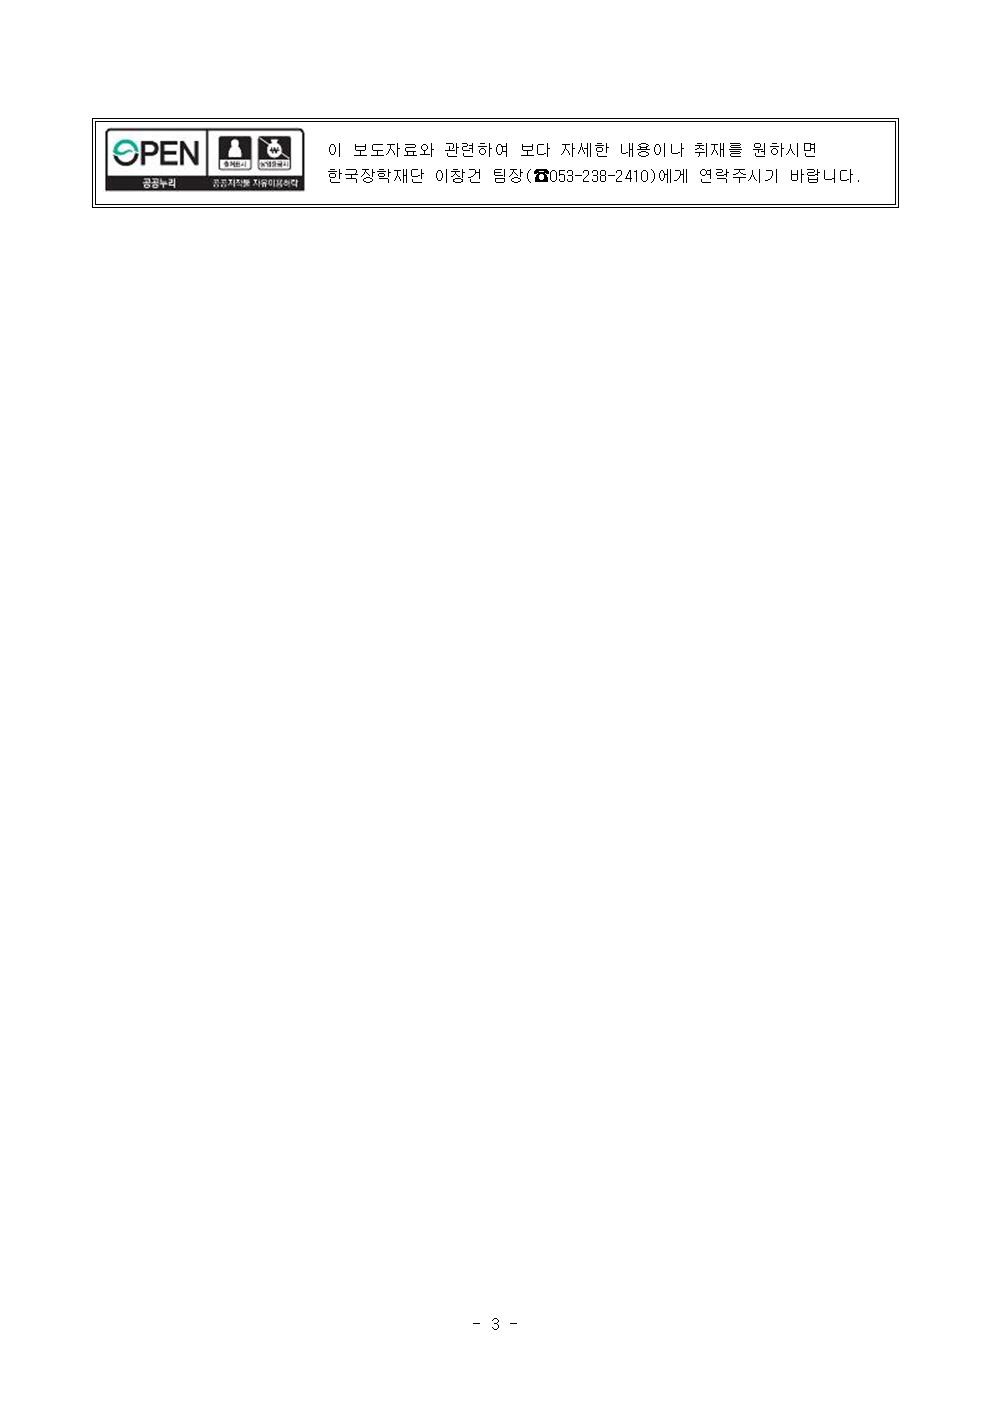 06-17(월)[보도자료] 한국장학재단-경기도 안양시 업무 협약 체결003.jpg